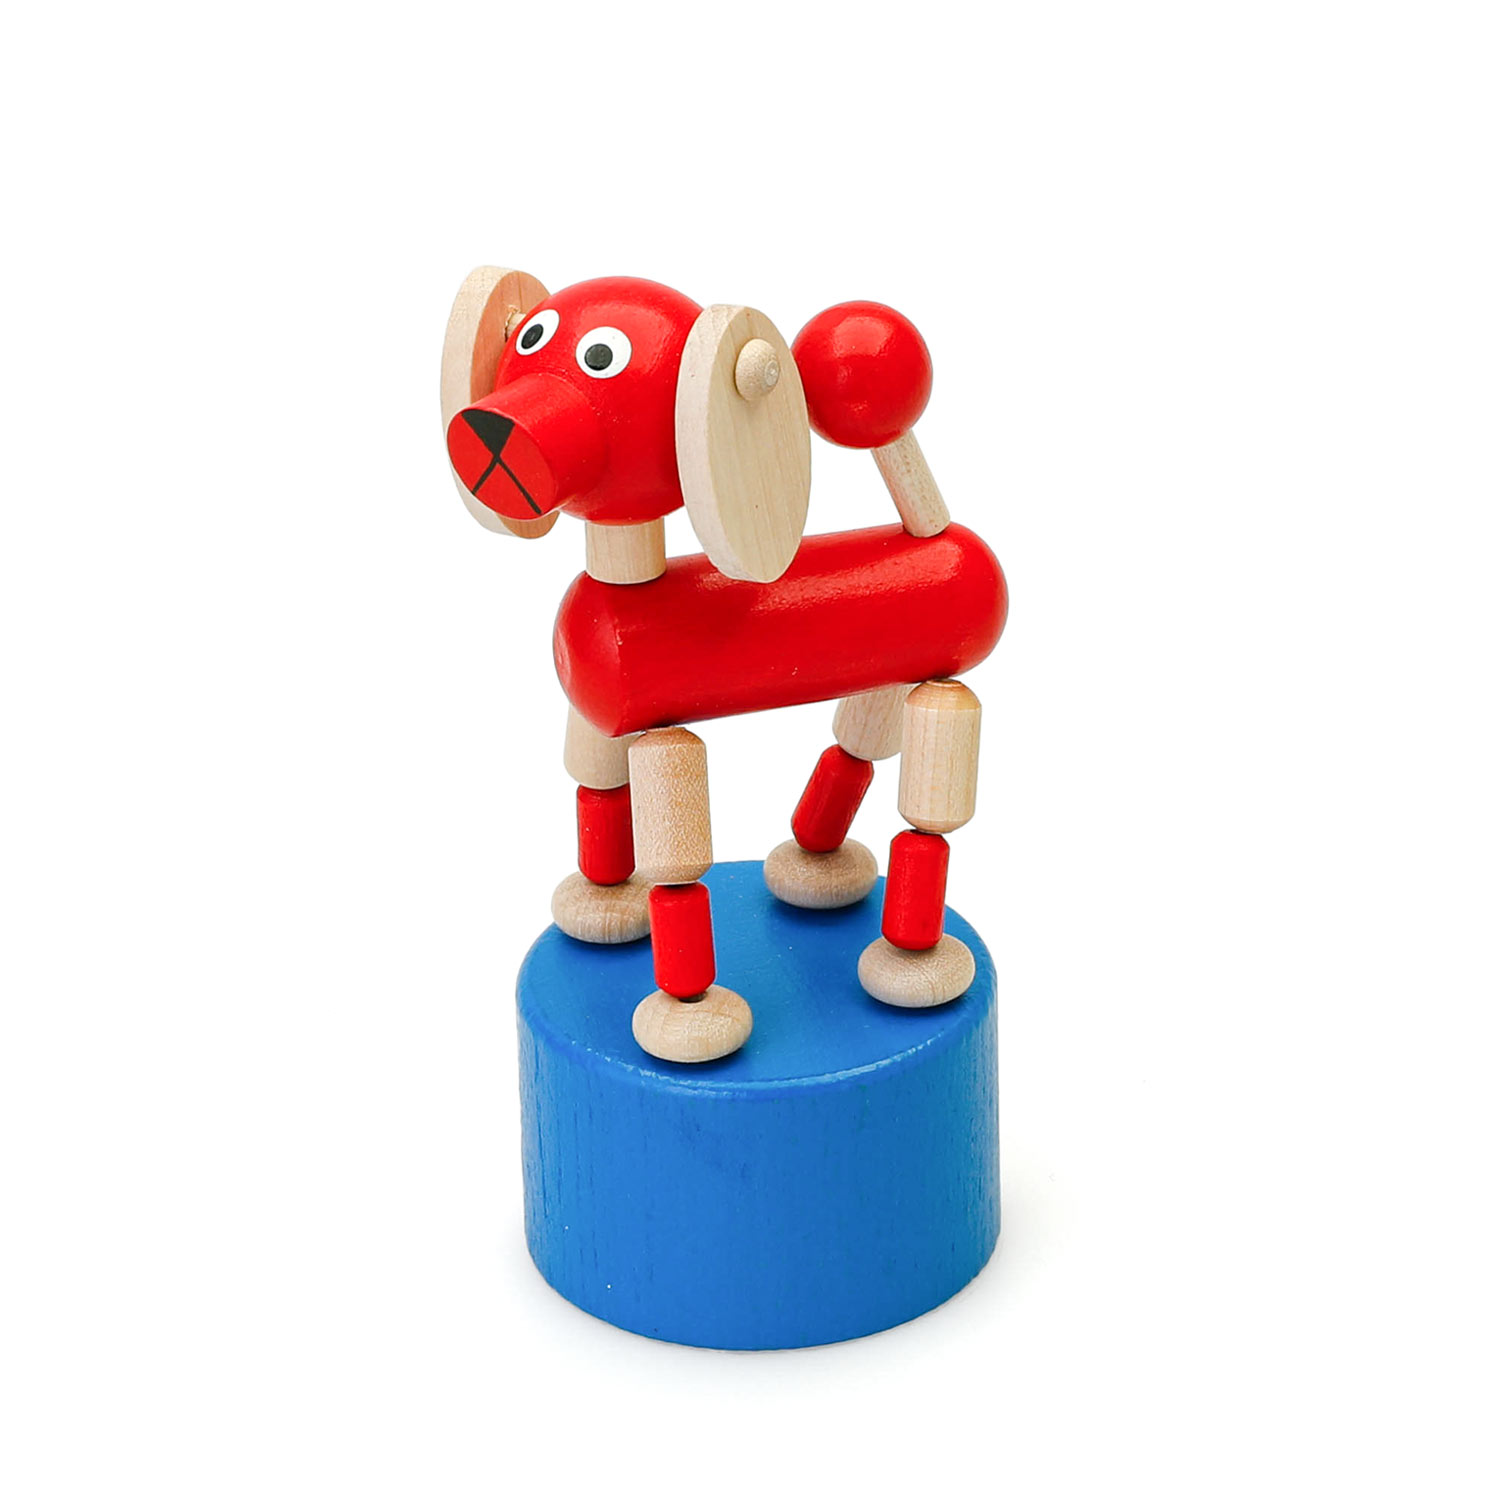 DETOA WOODEN PUSH UP TOY DOG デトア プッシュトイ ドッグ 木製 おもちゃ 玩具 イヌ 犬 置物 人形 オブジェ インテリア 2